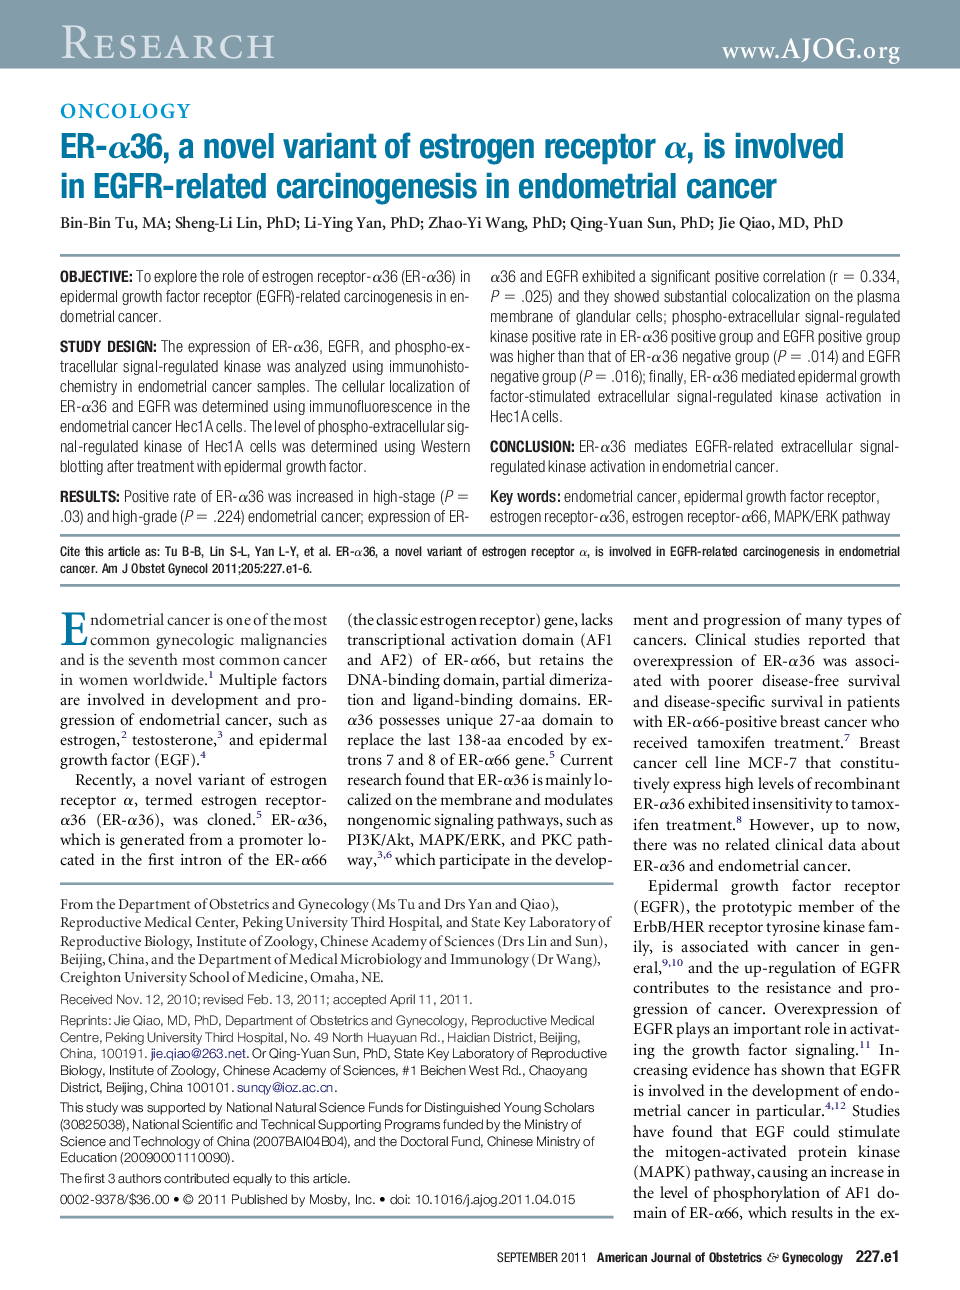 ER-Î±36, a novel variant of estrogen receptor Î±, is involved in EGFR-related carcinogenesis in endometrial cancer